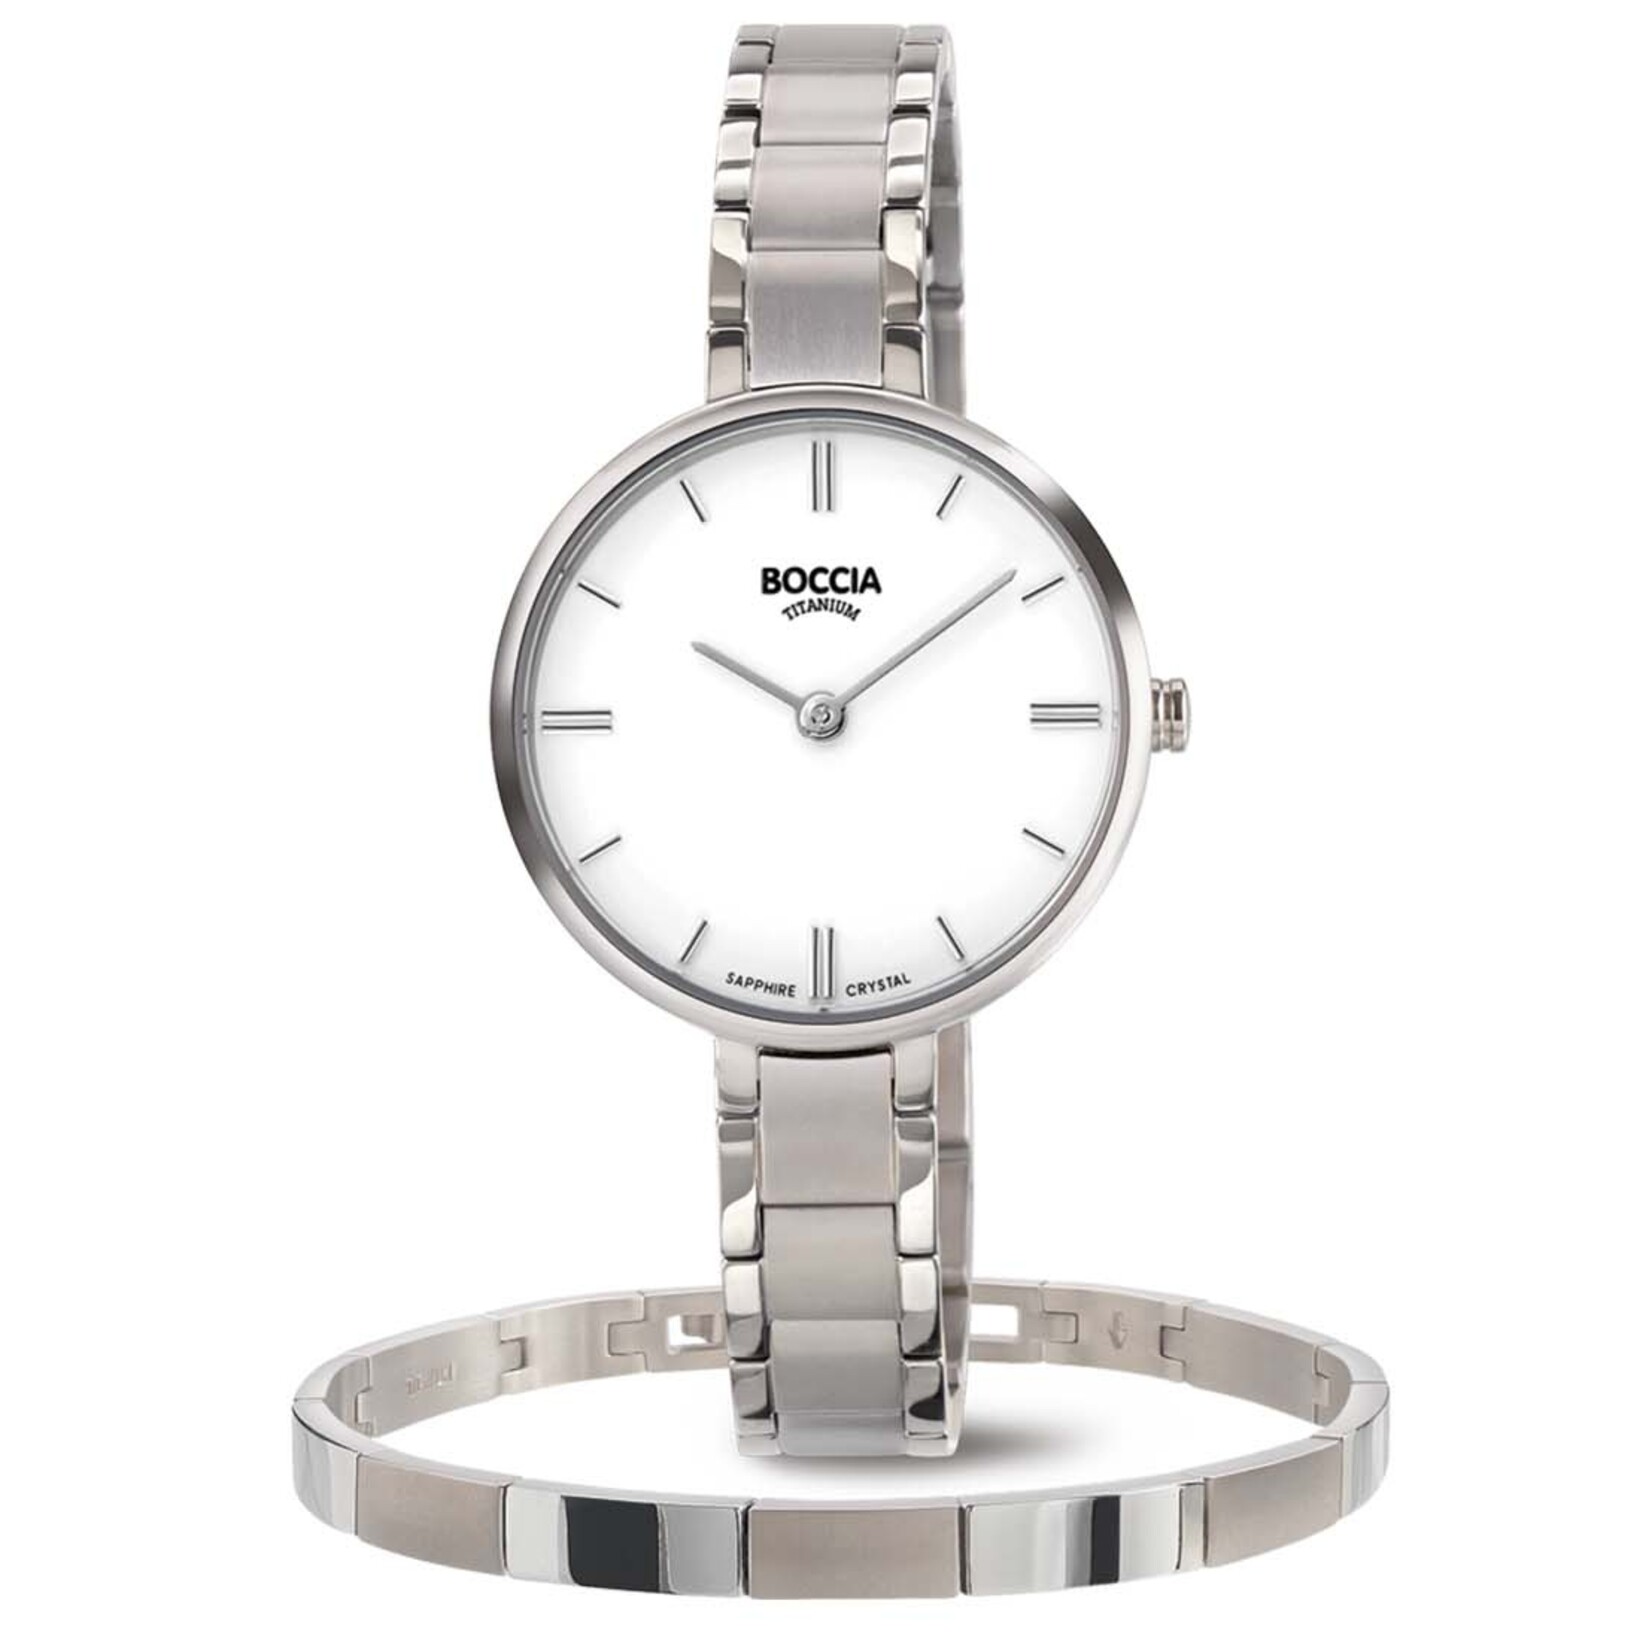 Boccia Boccia Titanium dames Horloge 3286-03 met gratis armband 5atm